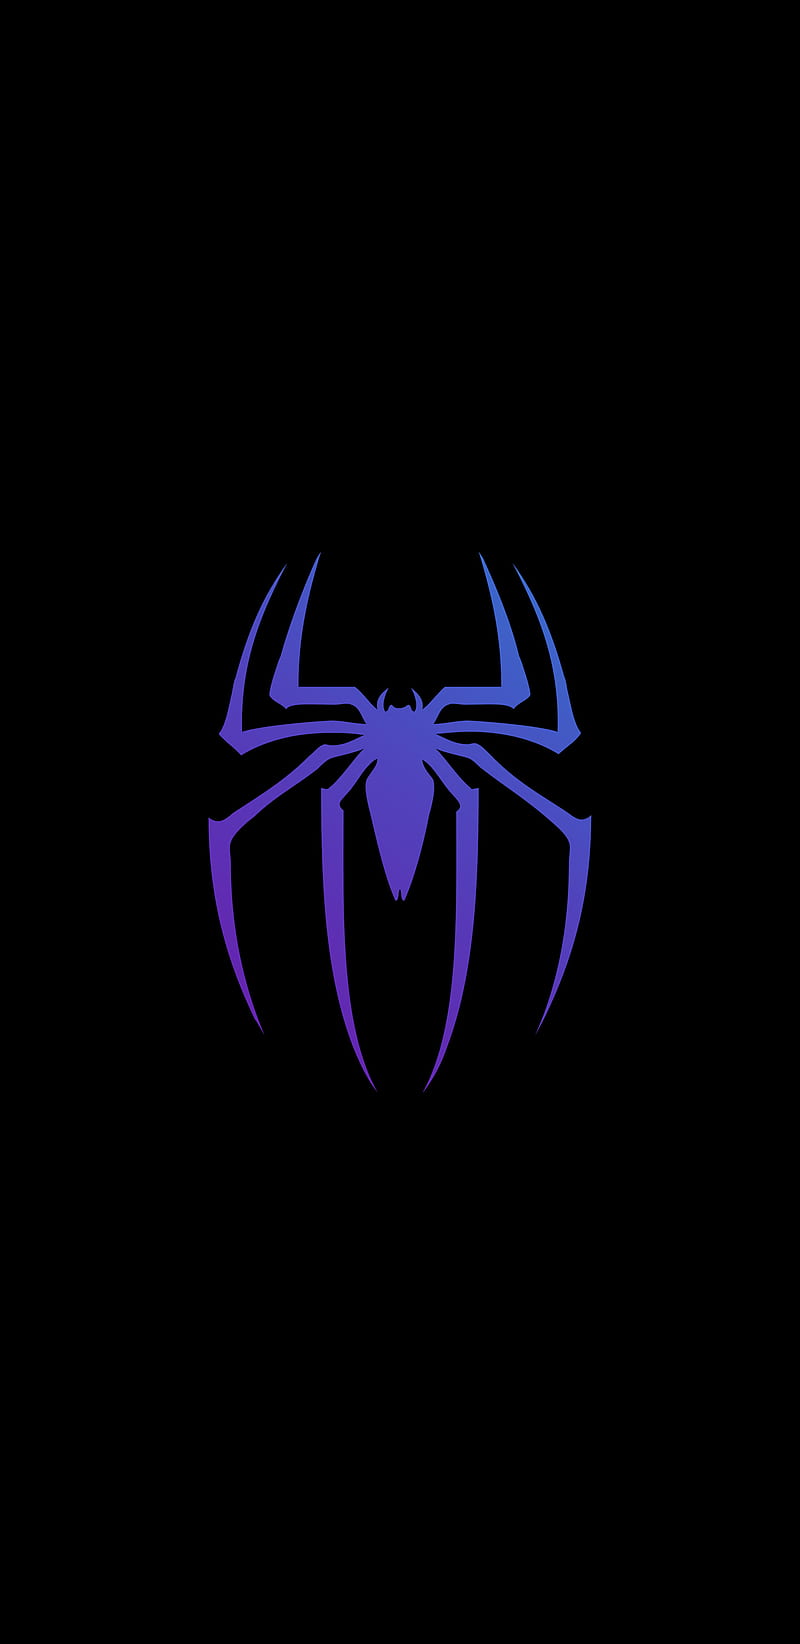 Spider-Man, avengers, avengers endgame, marvel, sam raimi, sam raimi  spiderman, HD phone wallpaper | Peakpx